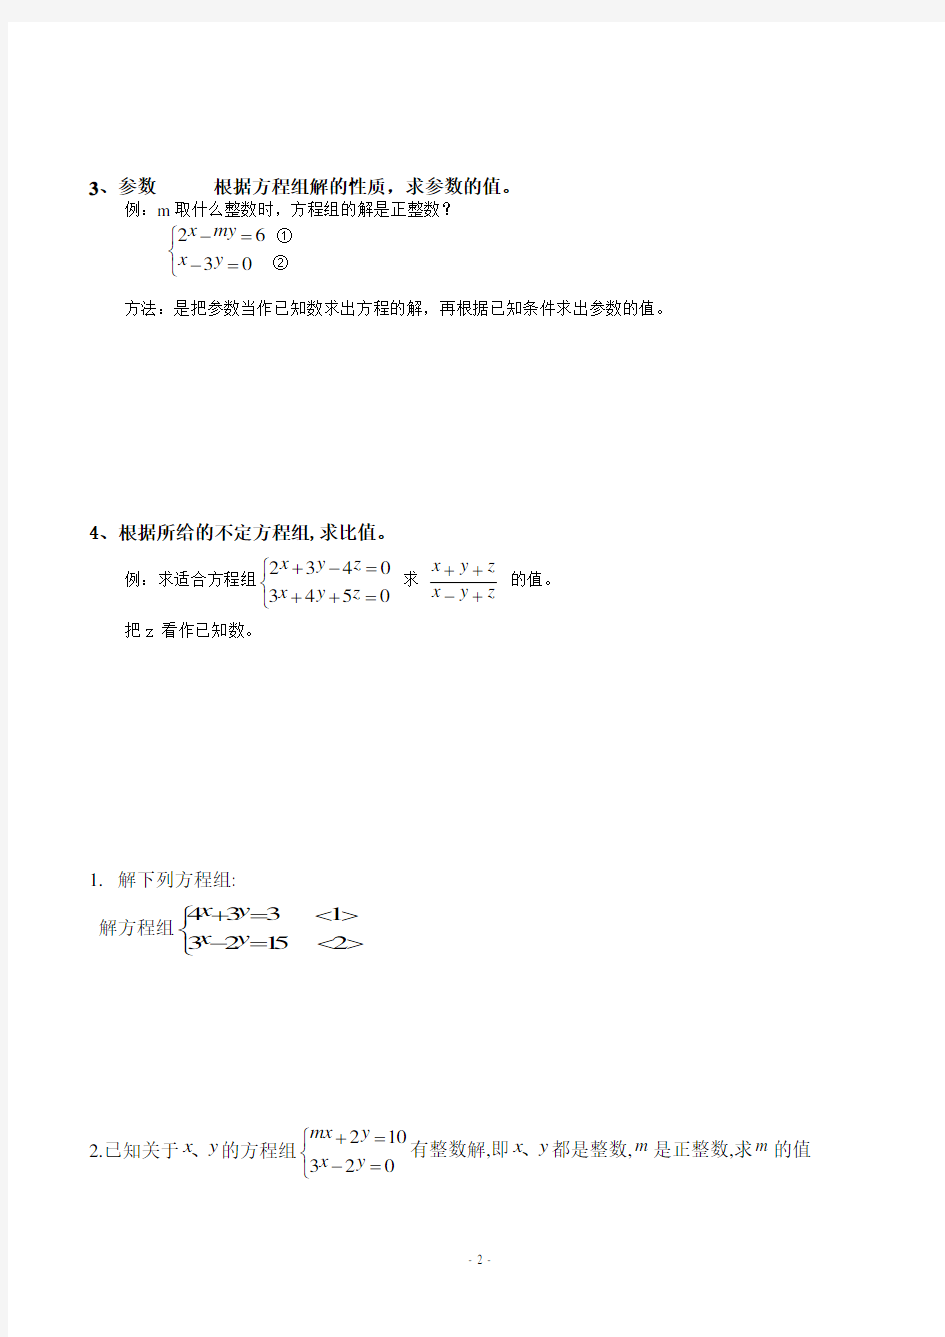 课题：二元一次方程组的同解、错解、参数等问题